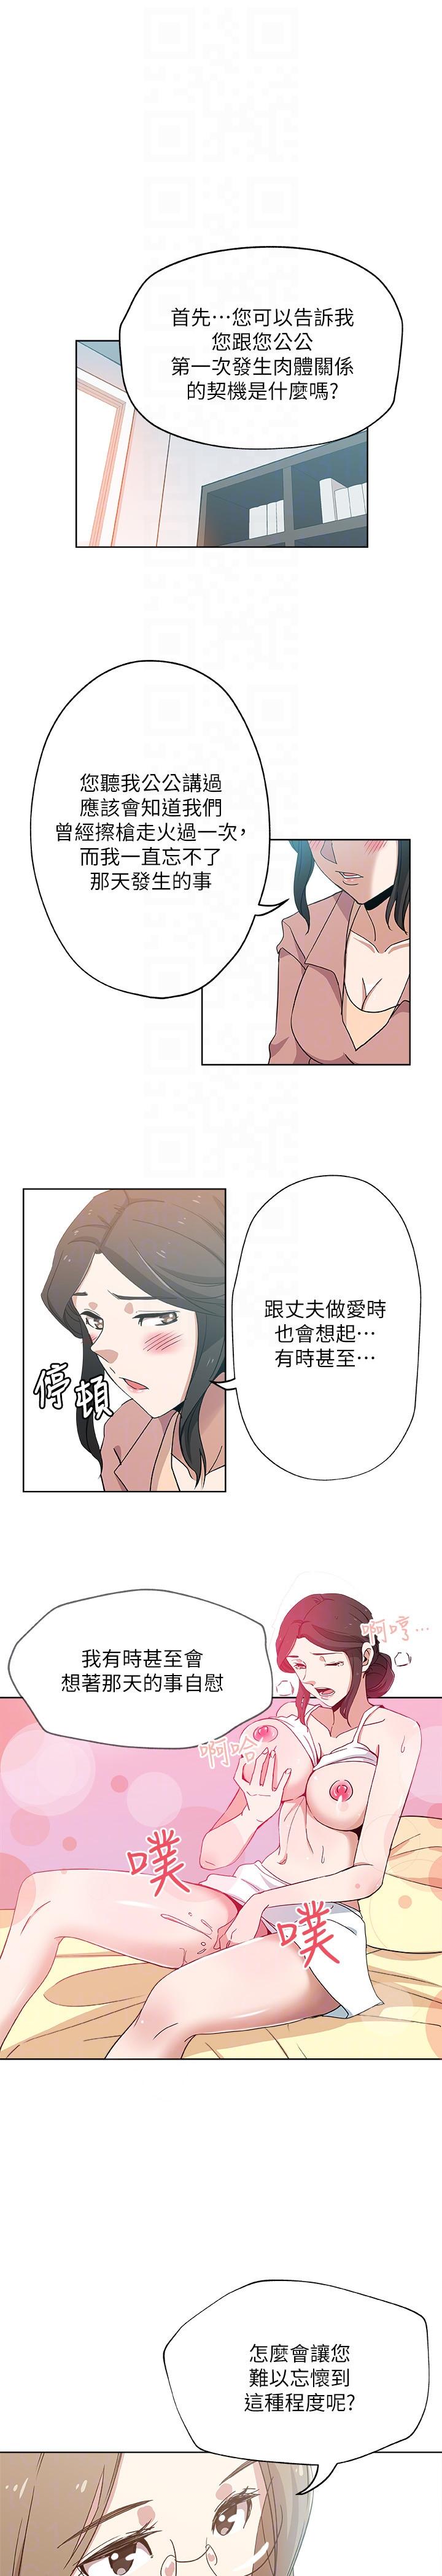 韩国污漫画 新媳婦 第10话-公公的「服务」 9